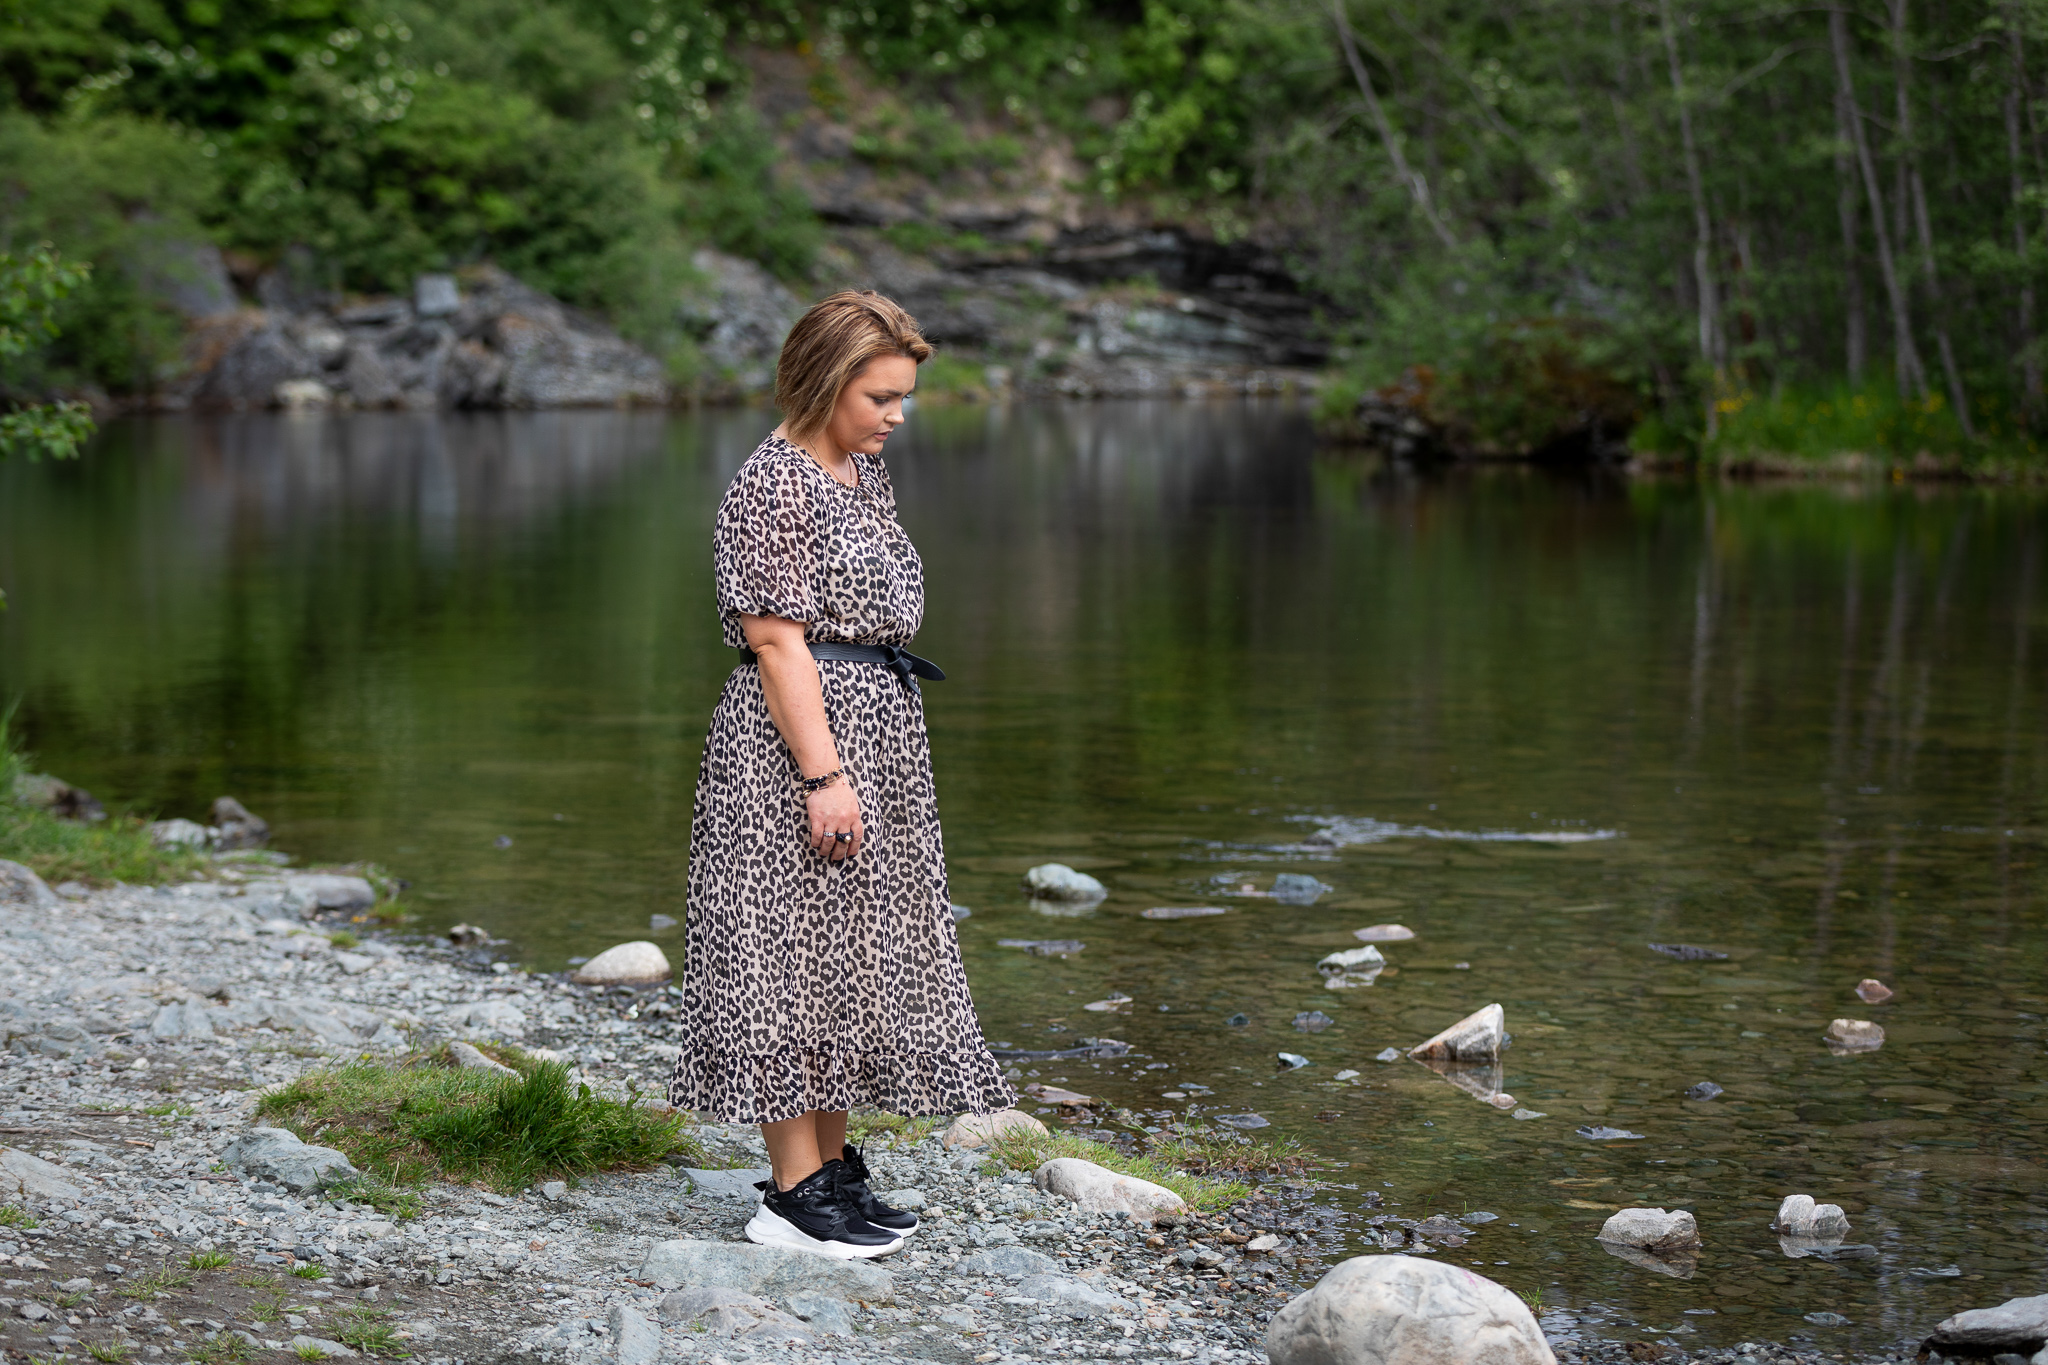 Bilde av en ung dame med kort brunt hår og kjole med leopardmønster (Elisabeth). Hun stå ved en elv og ser ned mot bakken.